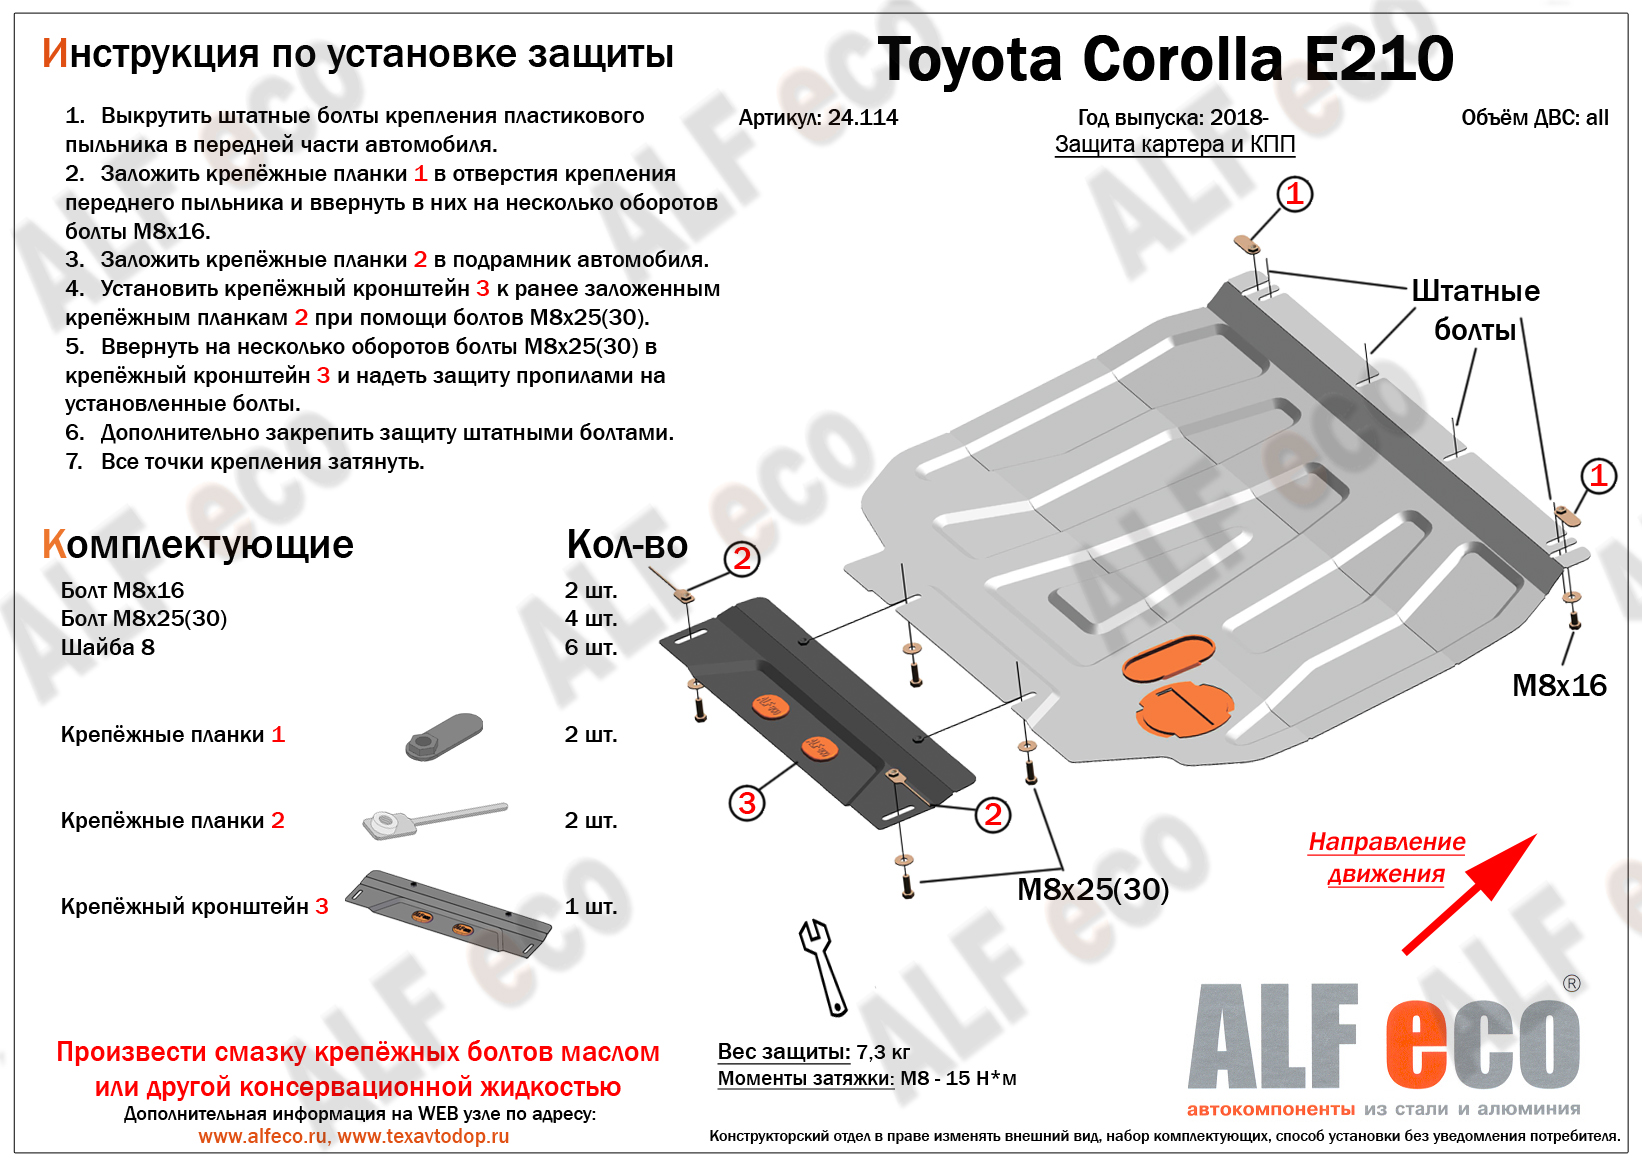 Toyota Corolla E210 (2019-) защита картера и кпп сталь 2мм